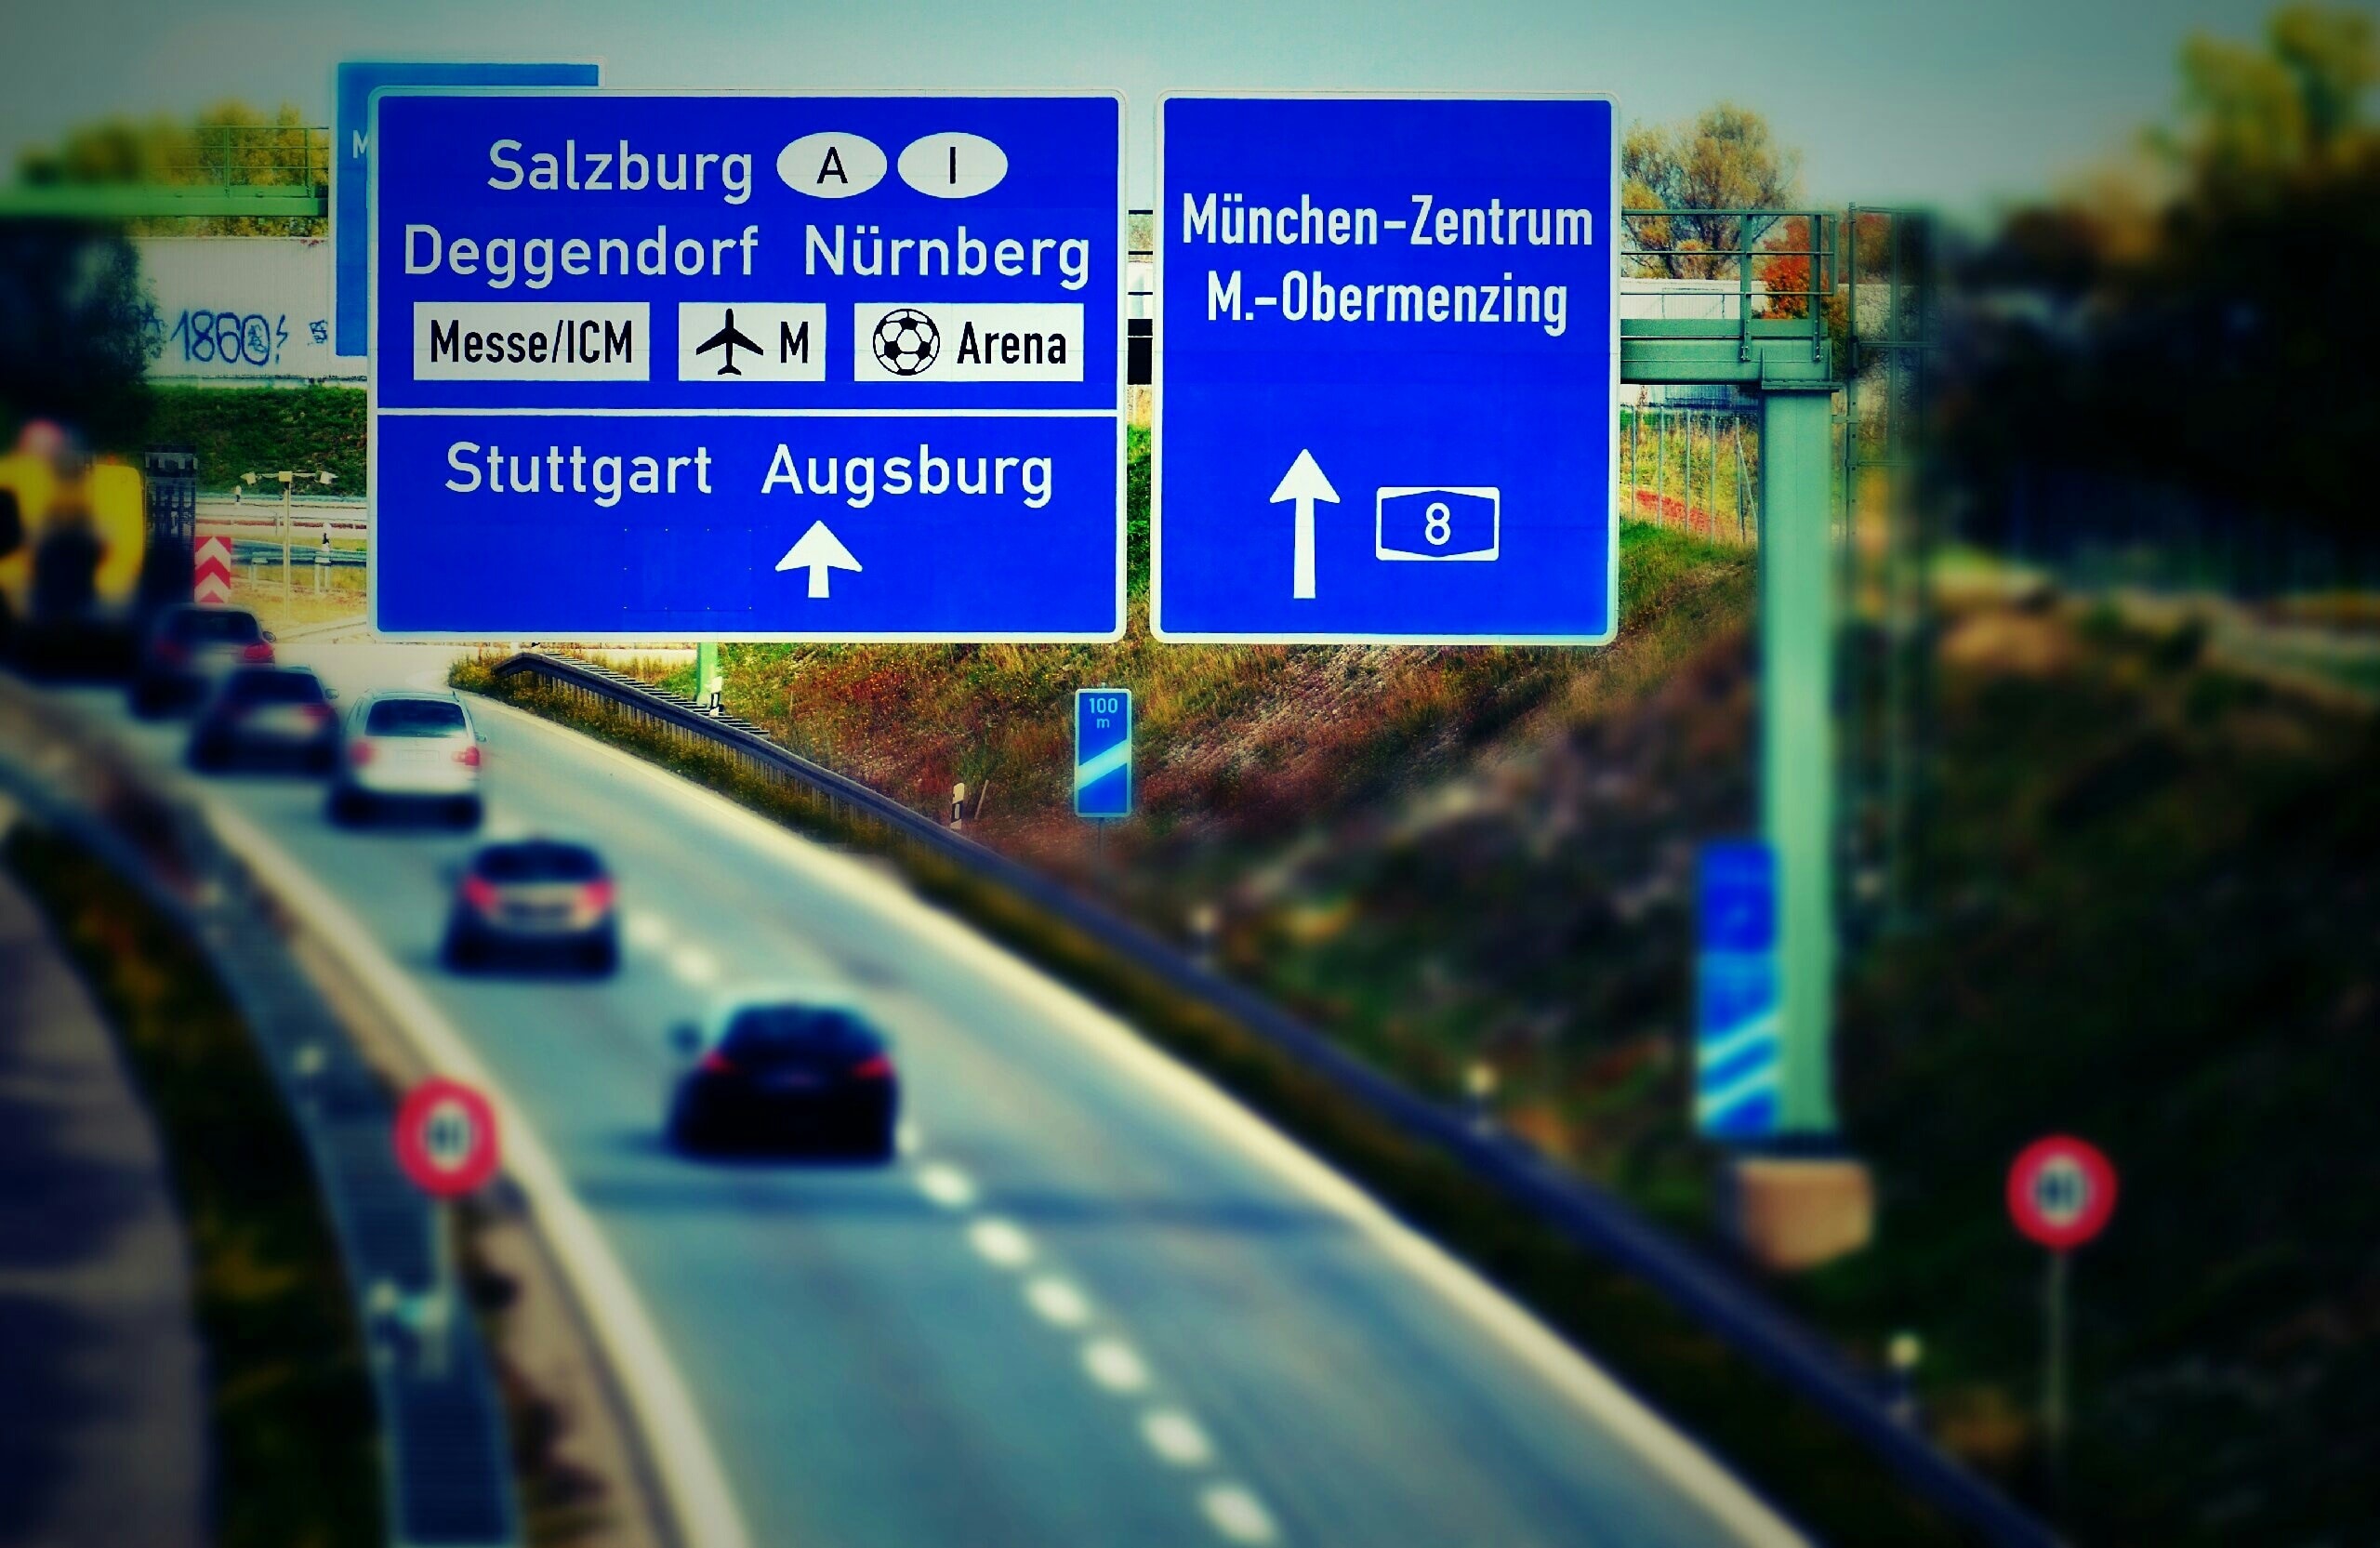 salszurg deggendorf nurnberg stuttgart augsbur signage